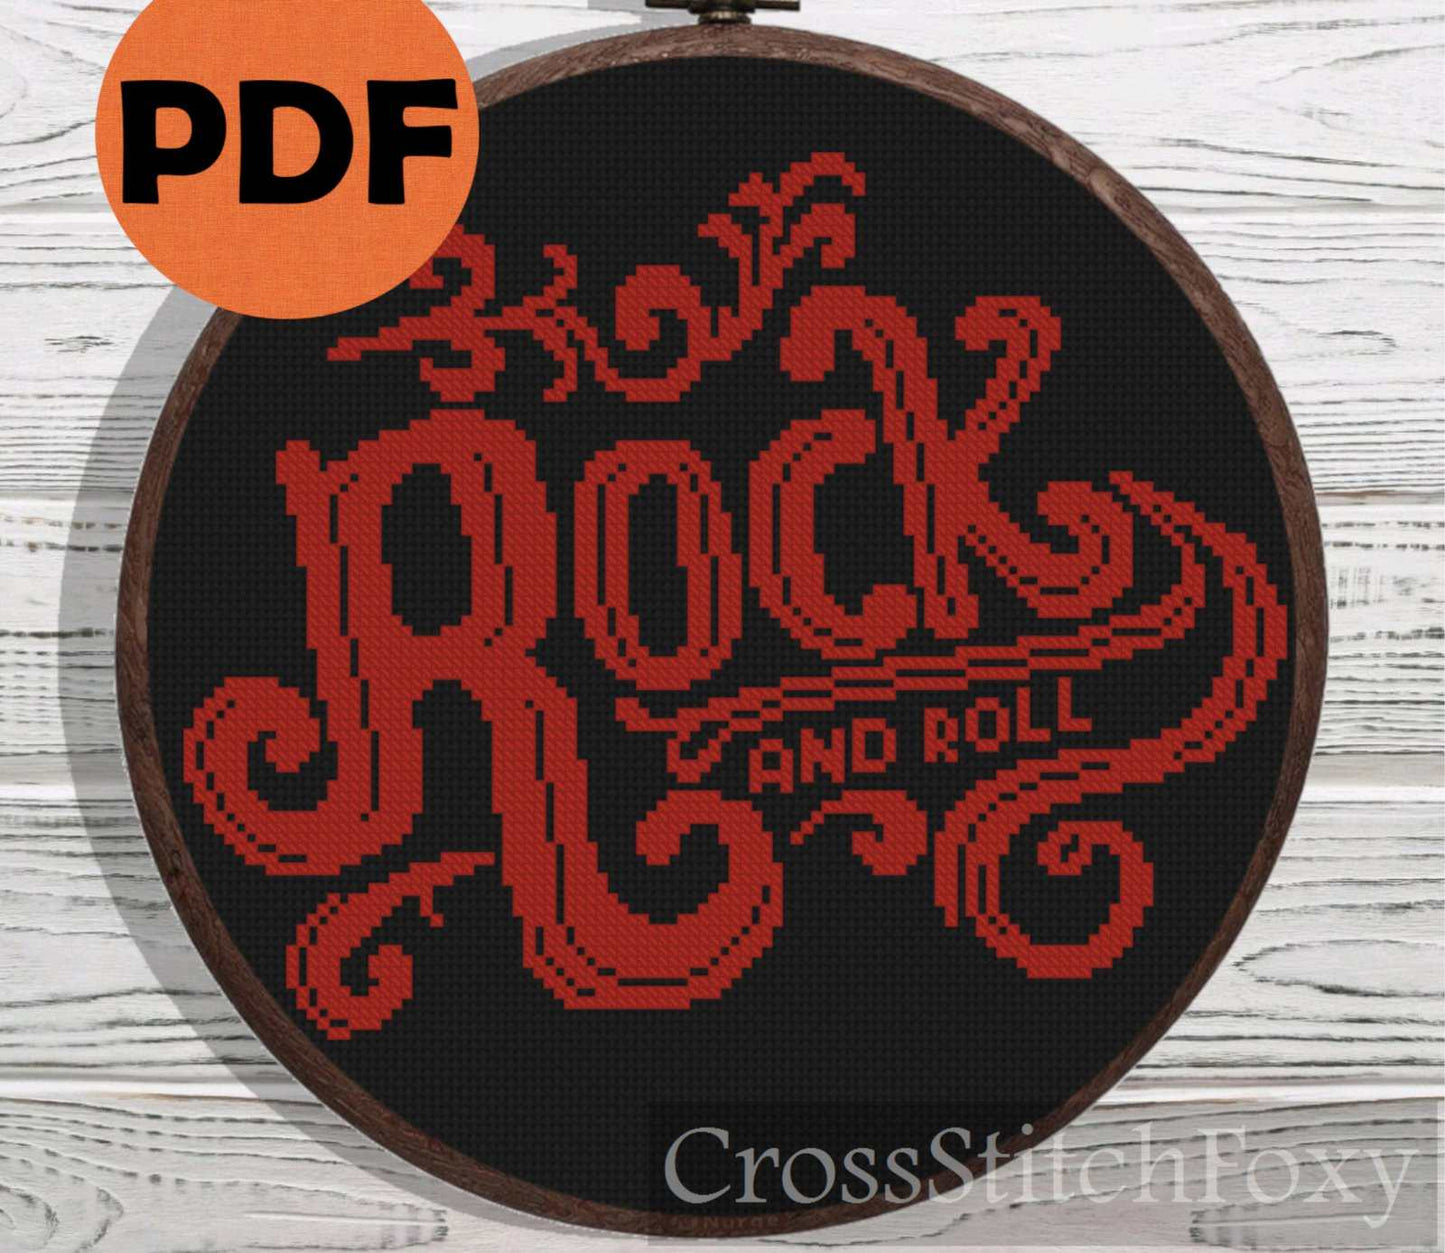 Rock n Roll cross stitch pattern